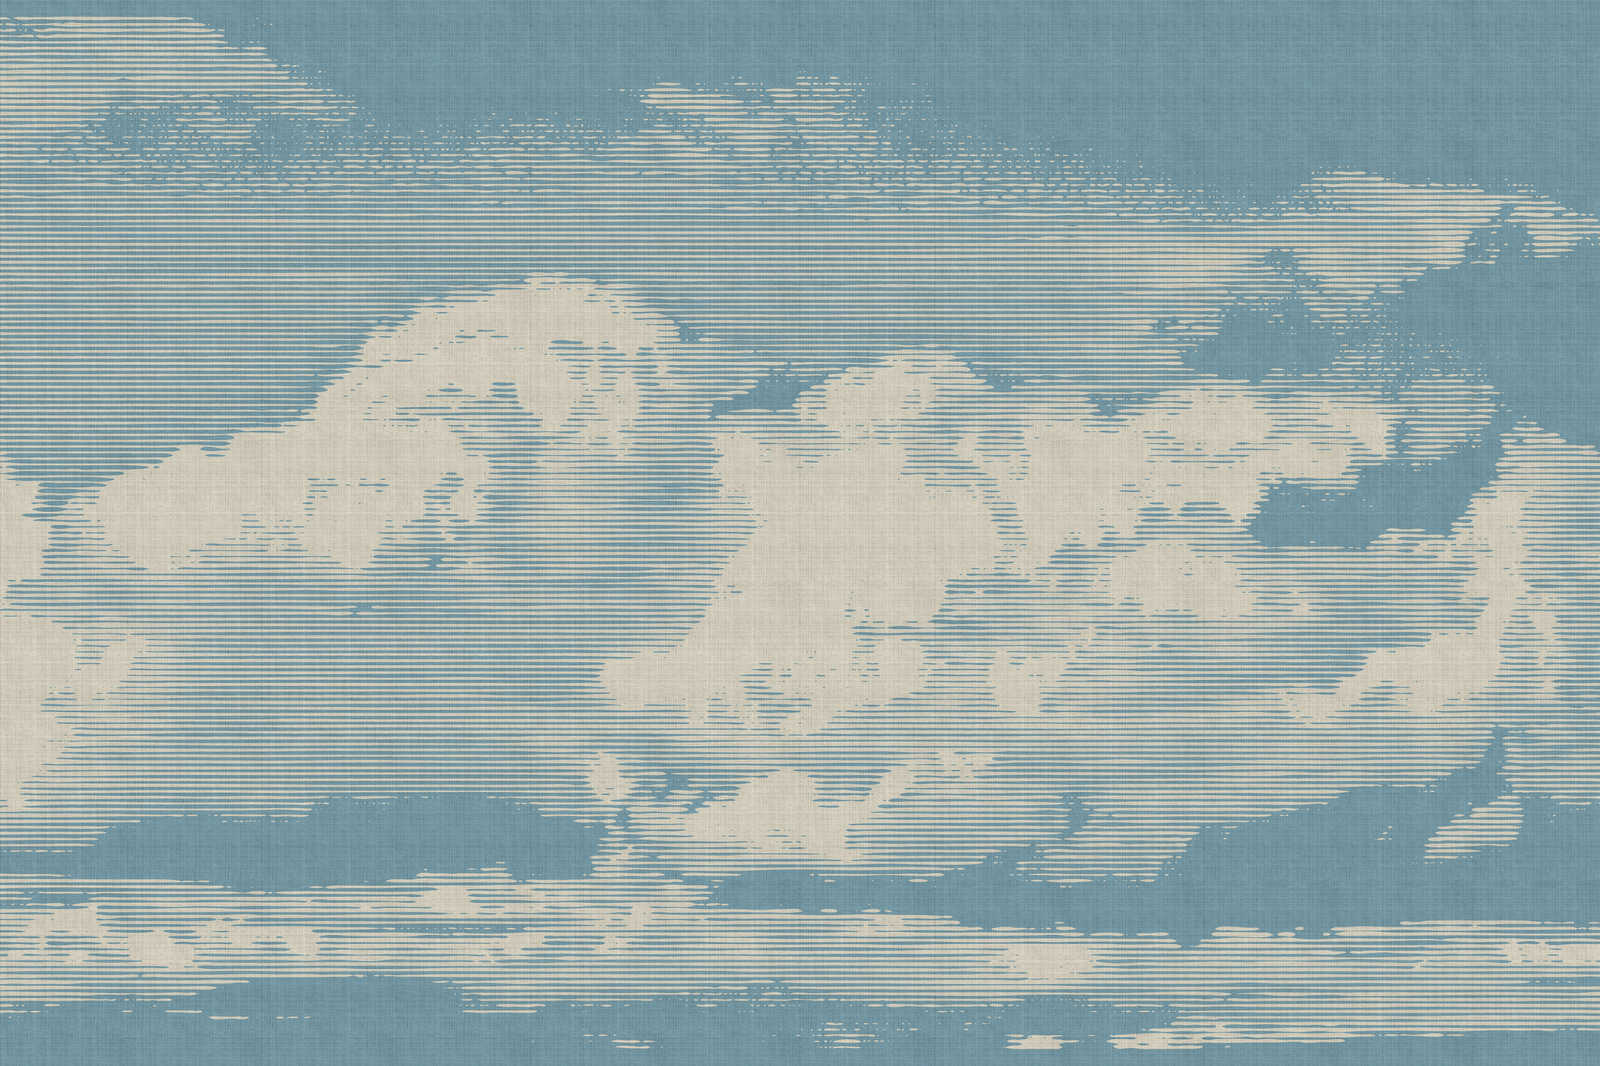             Clouds 1 - Toile céleste avec motif de nuages en lin naturel - 0,90 m x 0,60 m
        